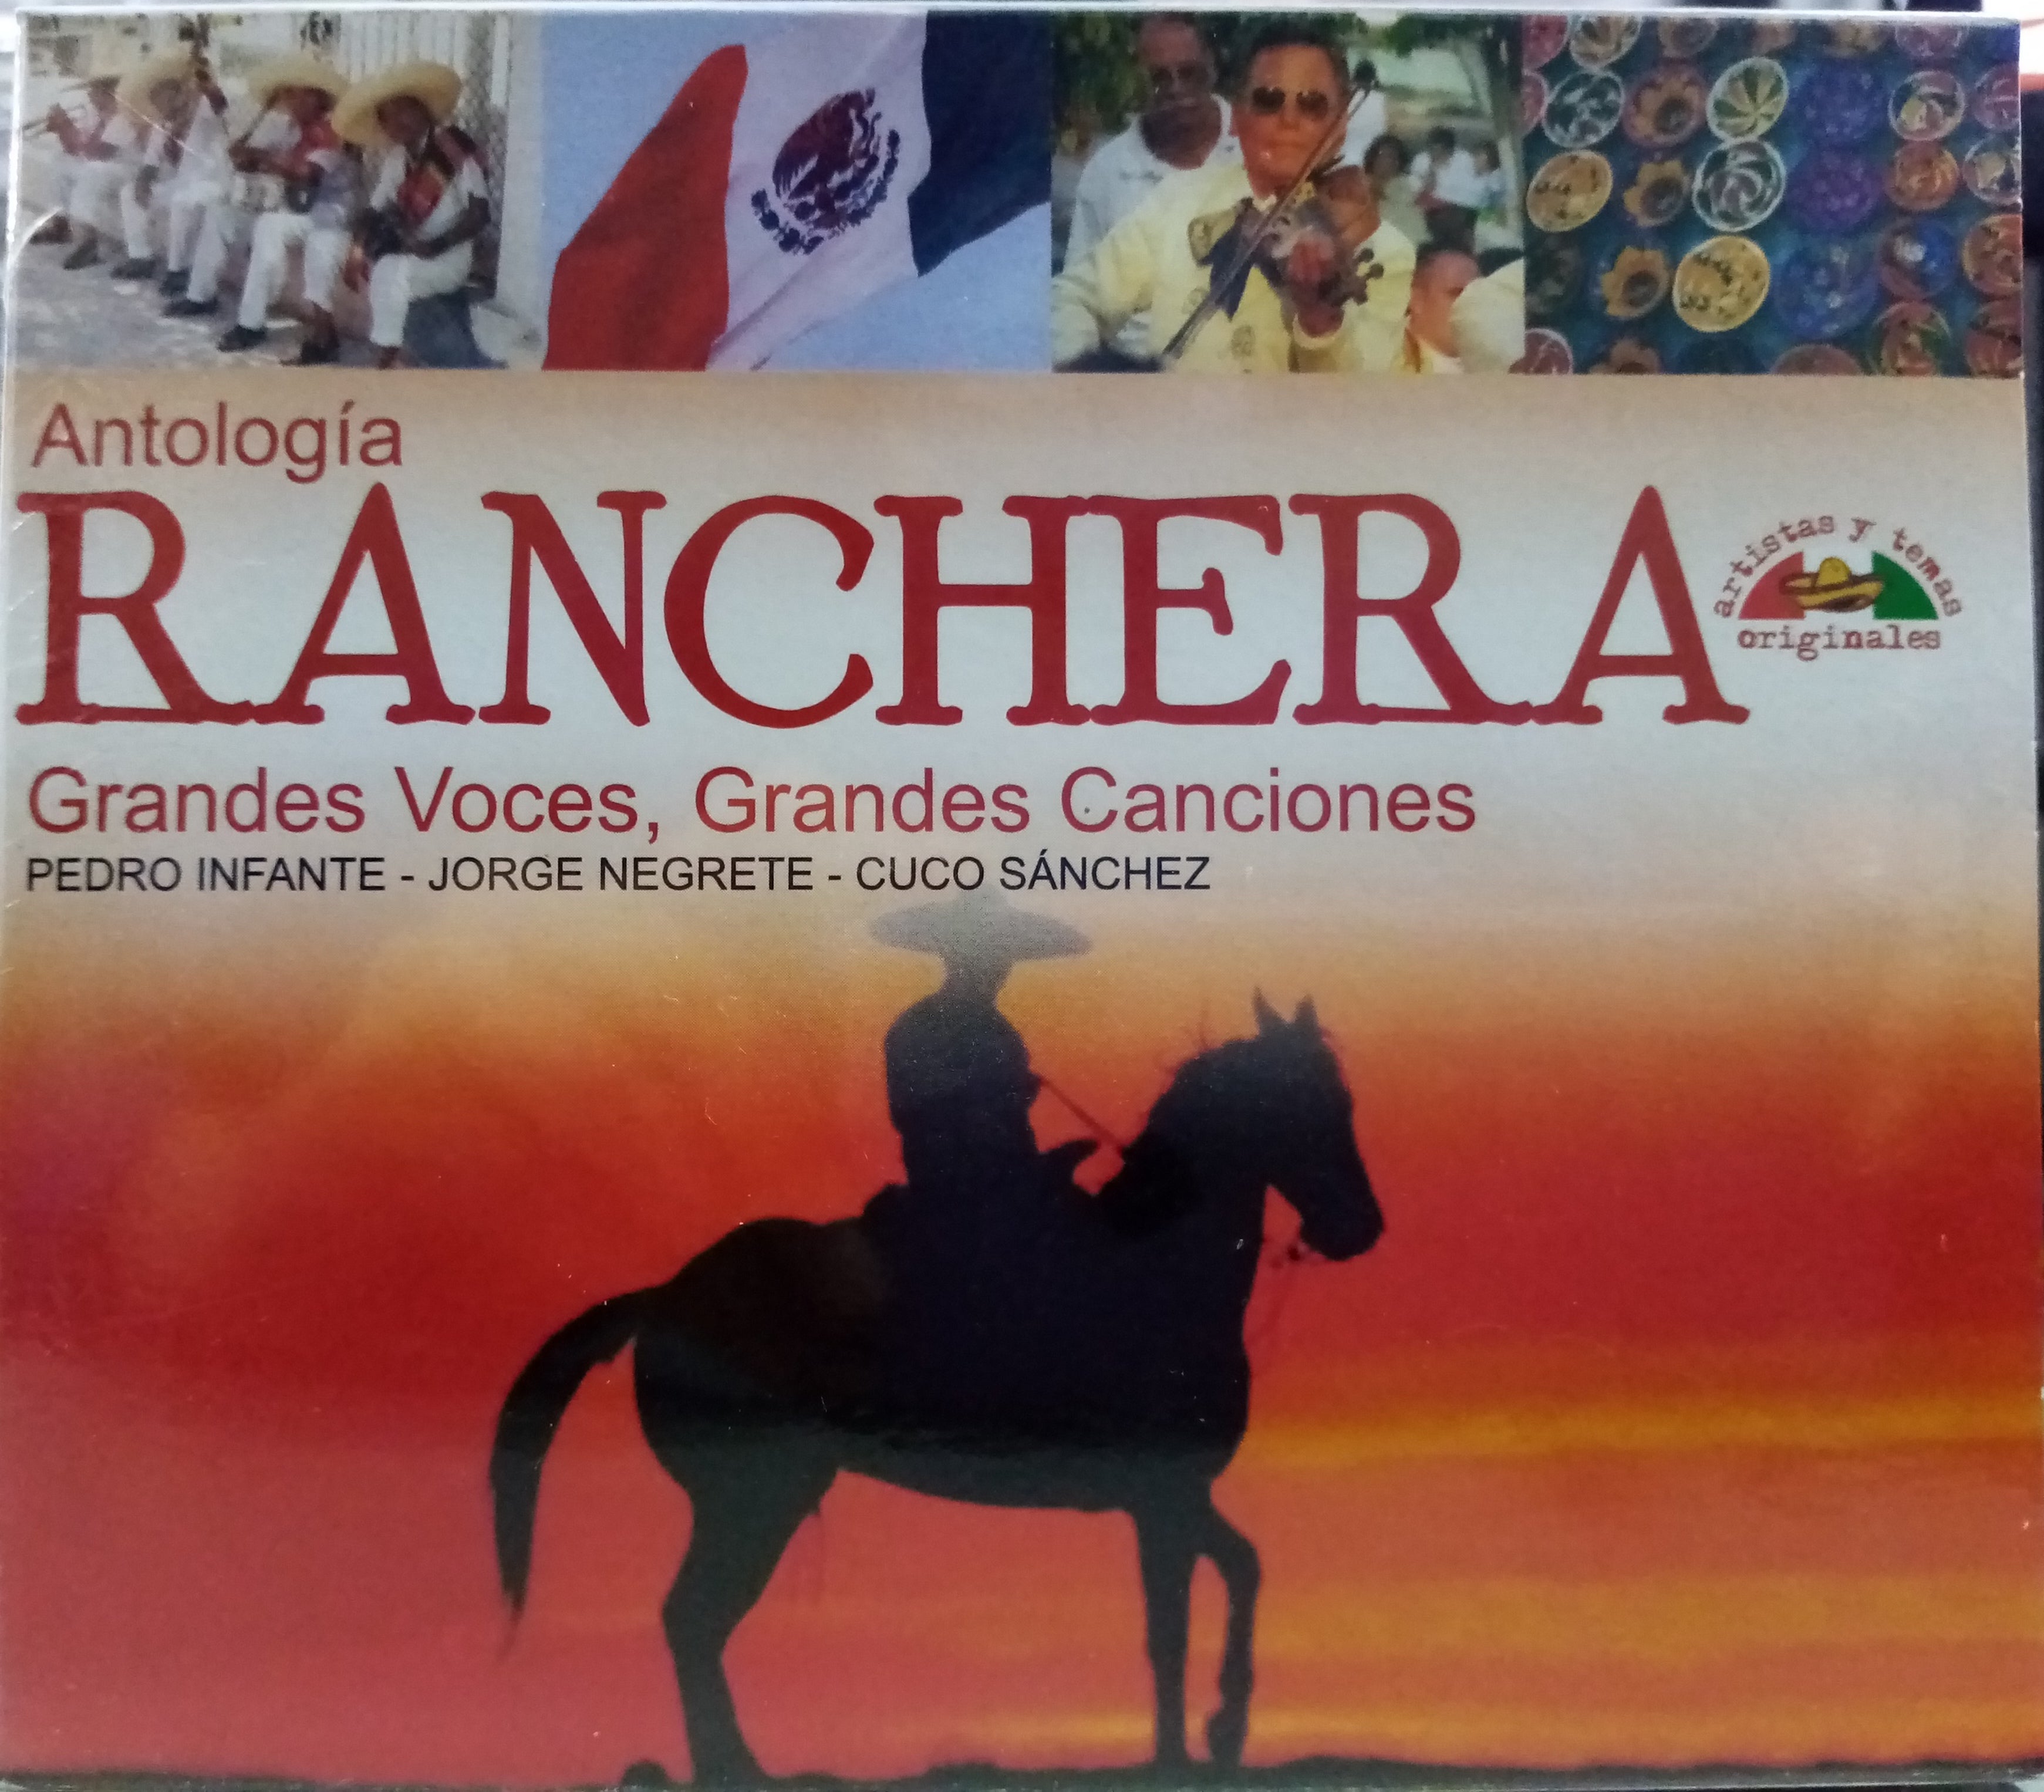 CDX3 Pedro Infante / Jorge Negrete / Cuco Sánchez - Antología Ranchera, Grandes Voces, Grandes Canciones